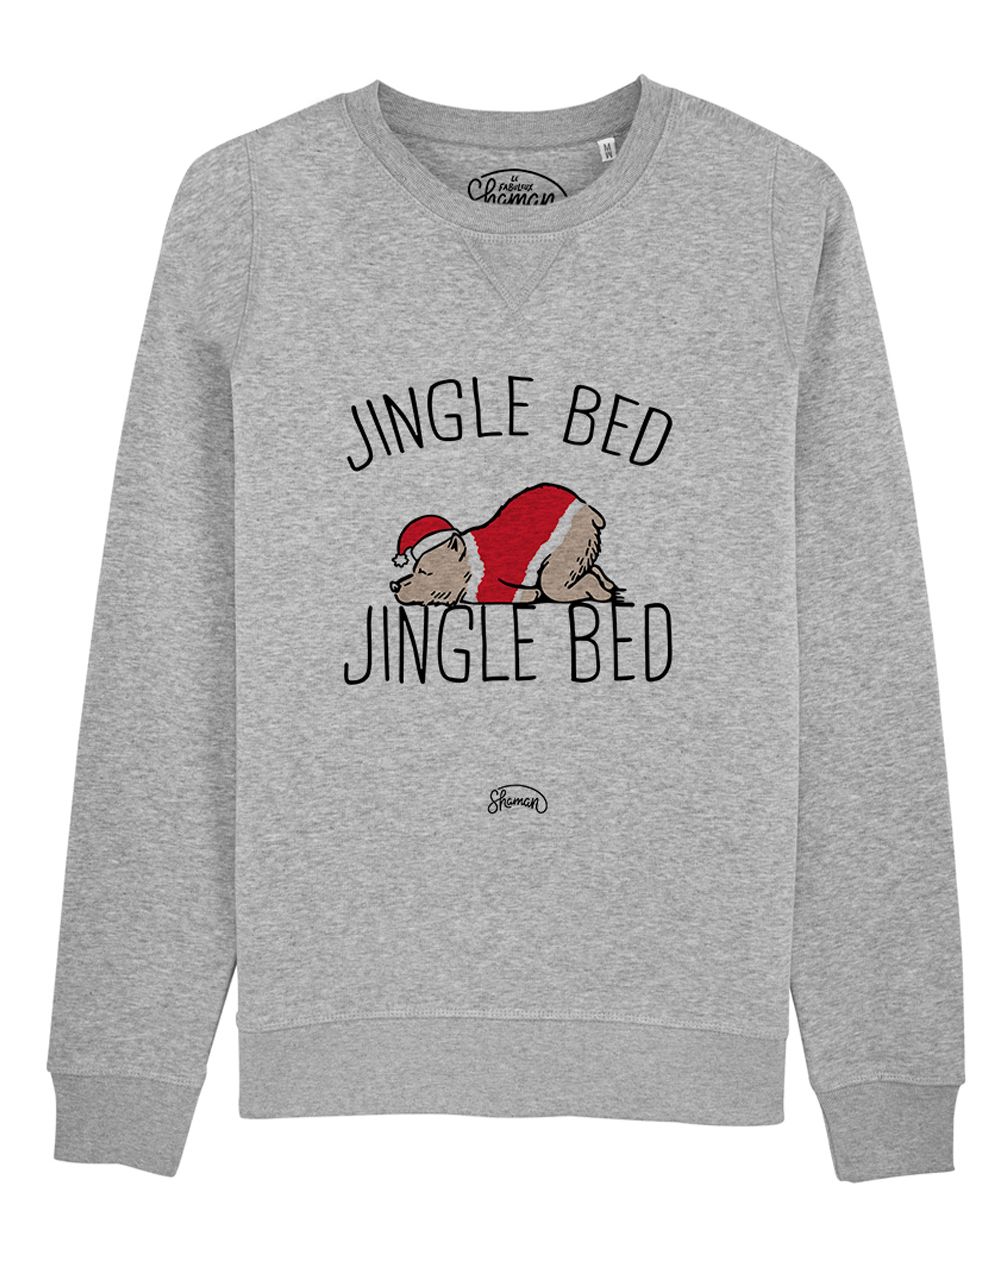 Sweat "Jingle bed"